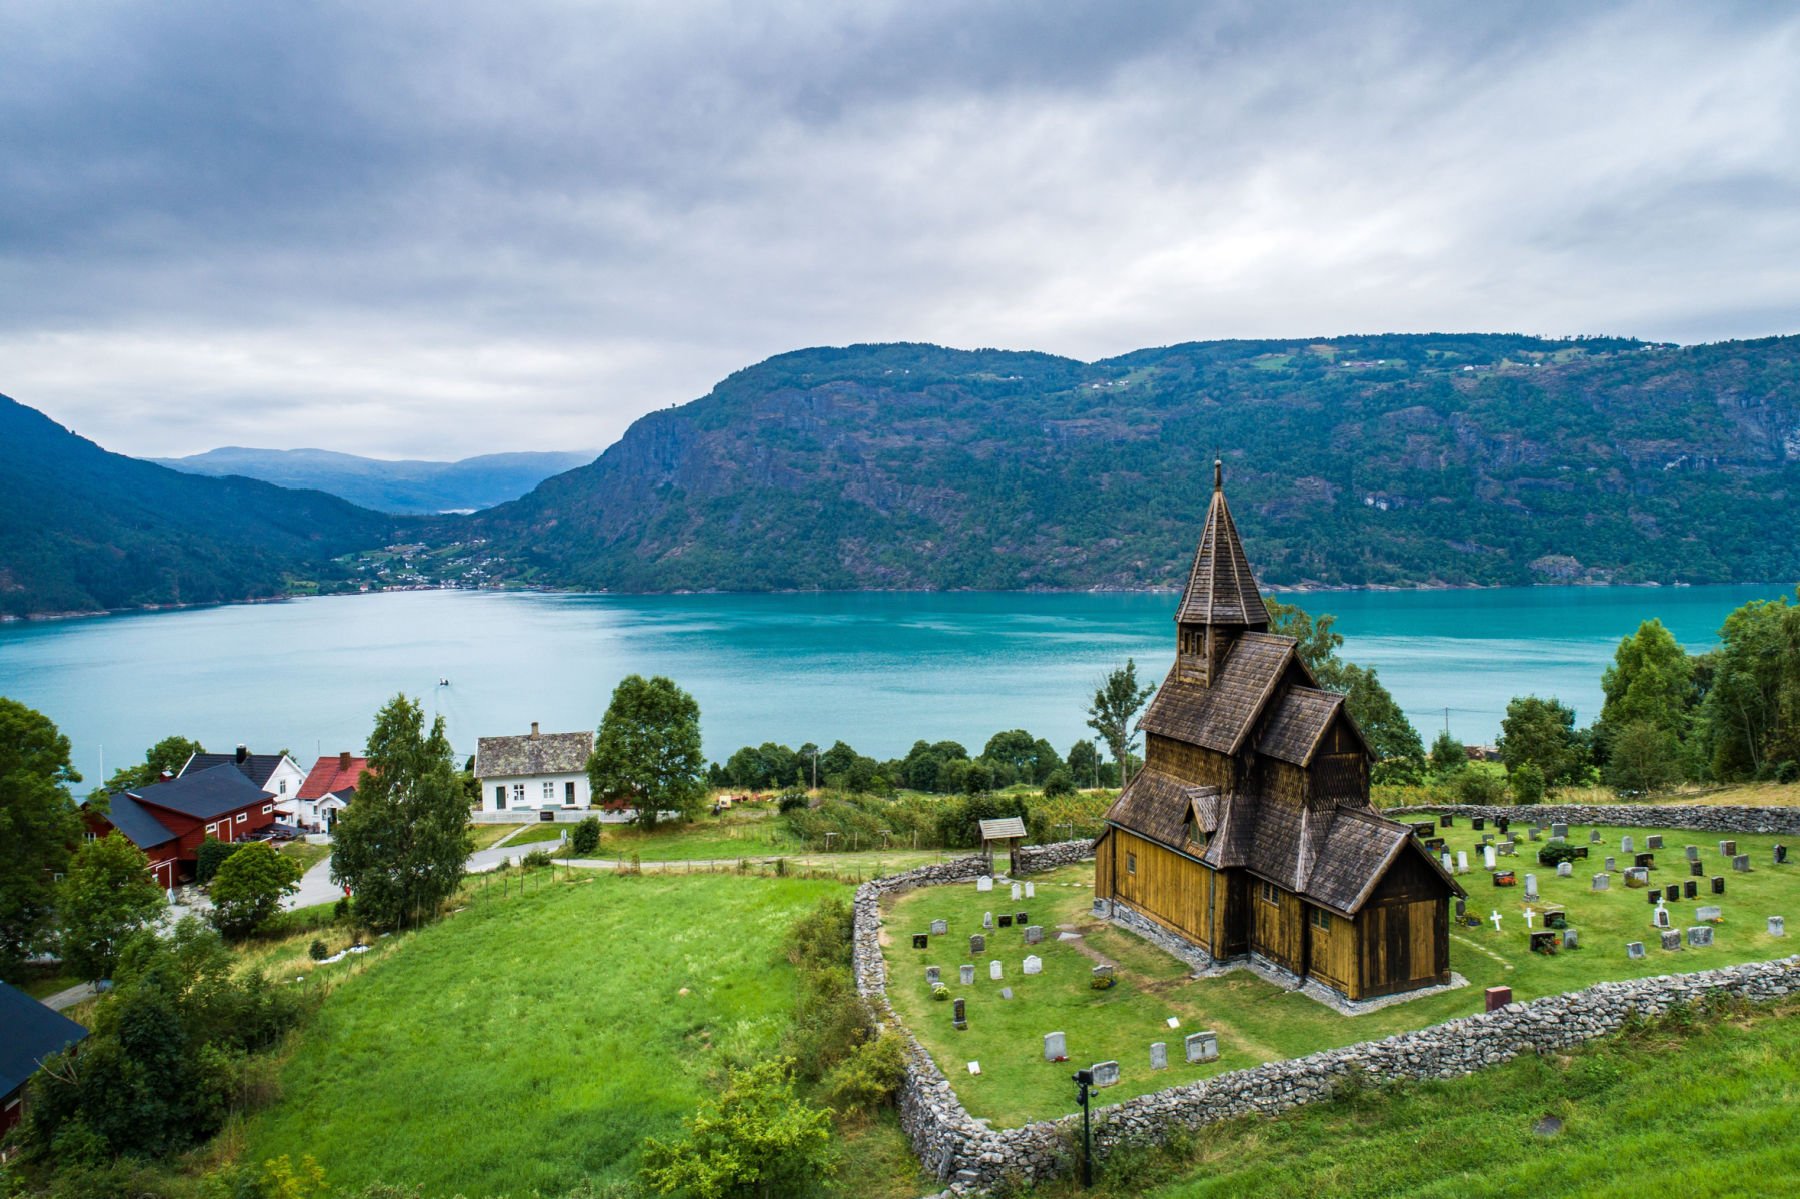 Église d'Urnes Stave : L'église norvégienne de 900 ans, d'inspiration nordique - 25